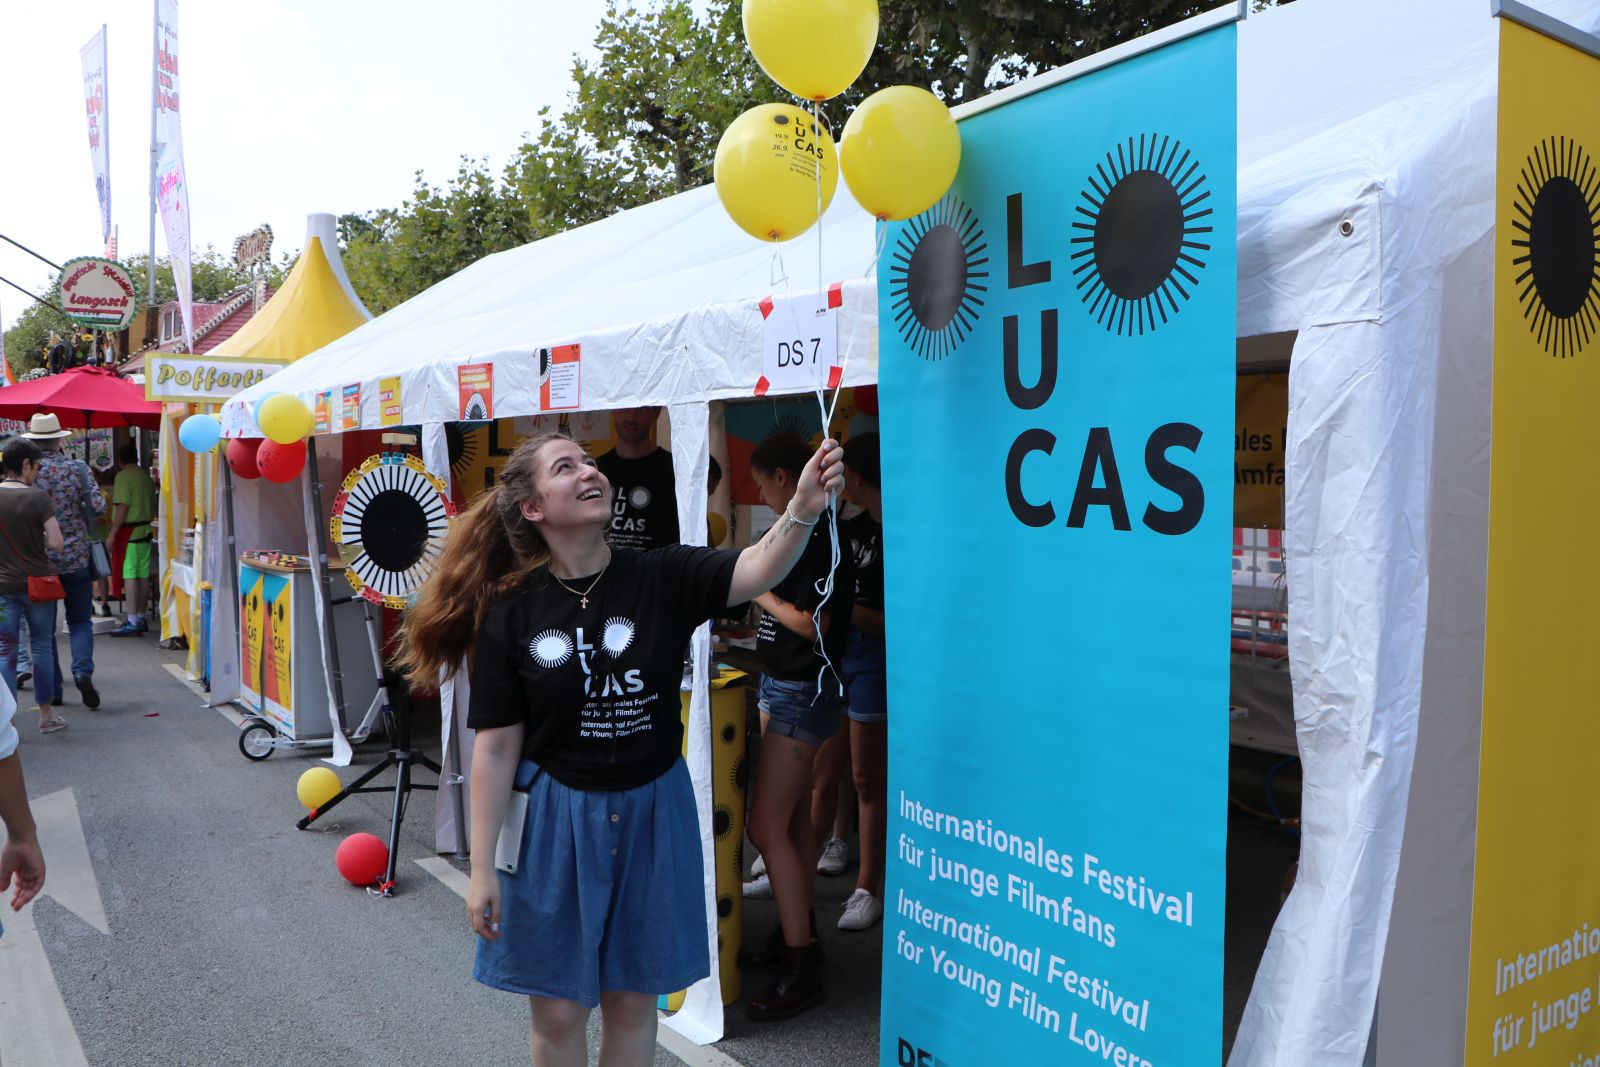 Festzelt von LUCAS - Internationales Festival für junge Filmfans während des Museumsuferfests